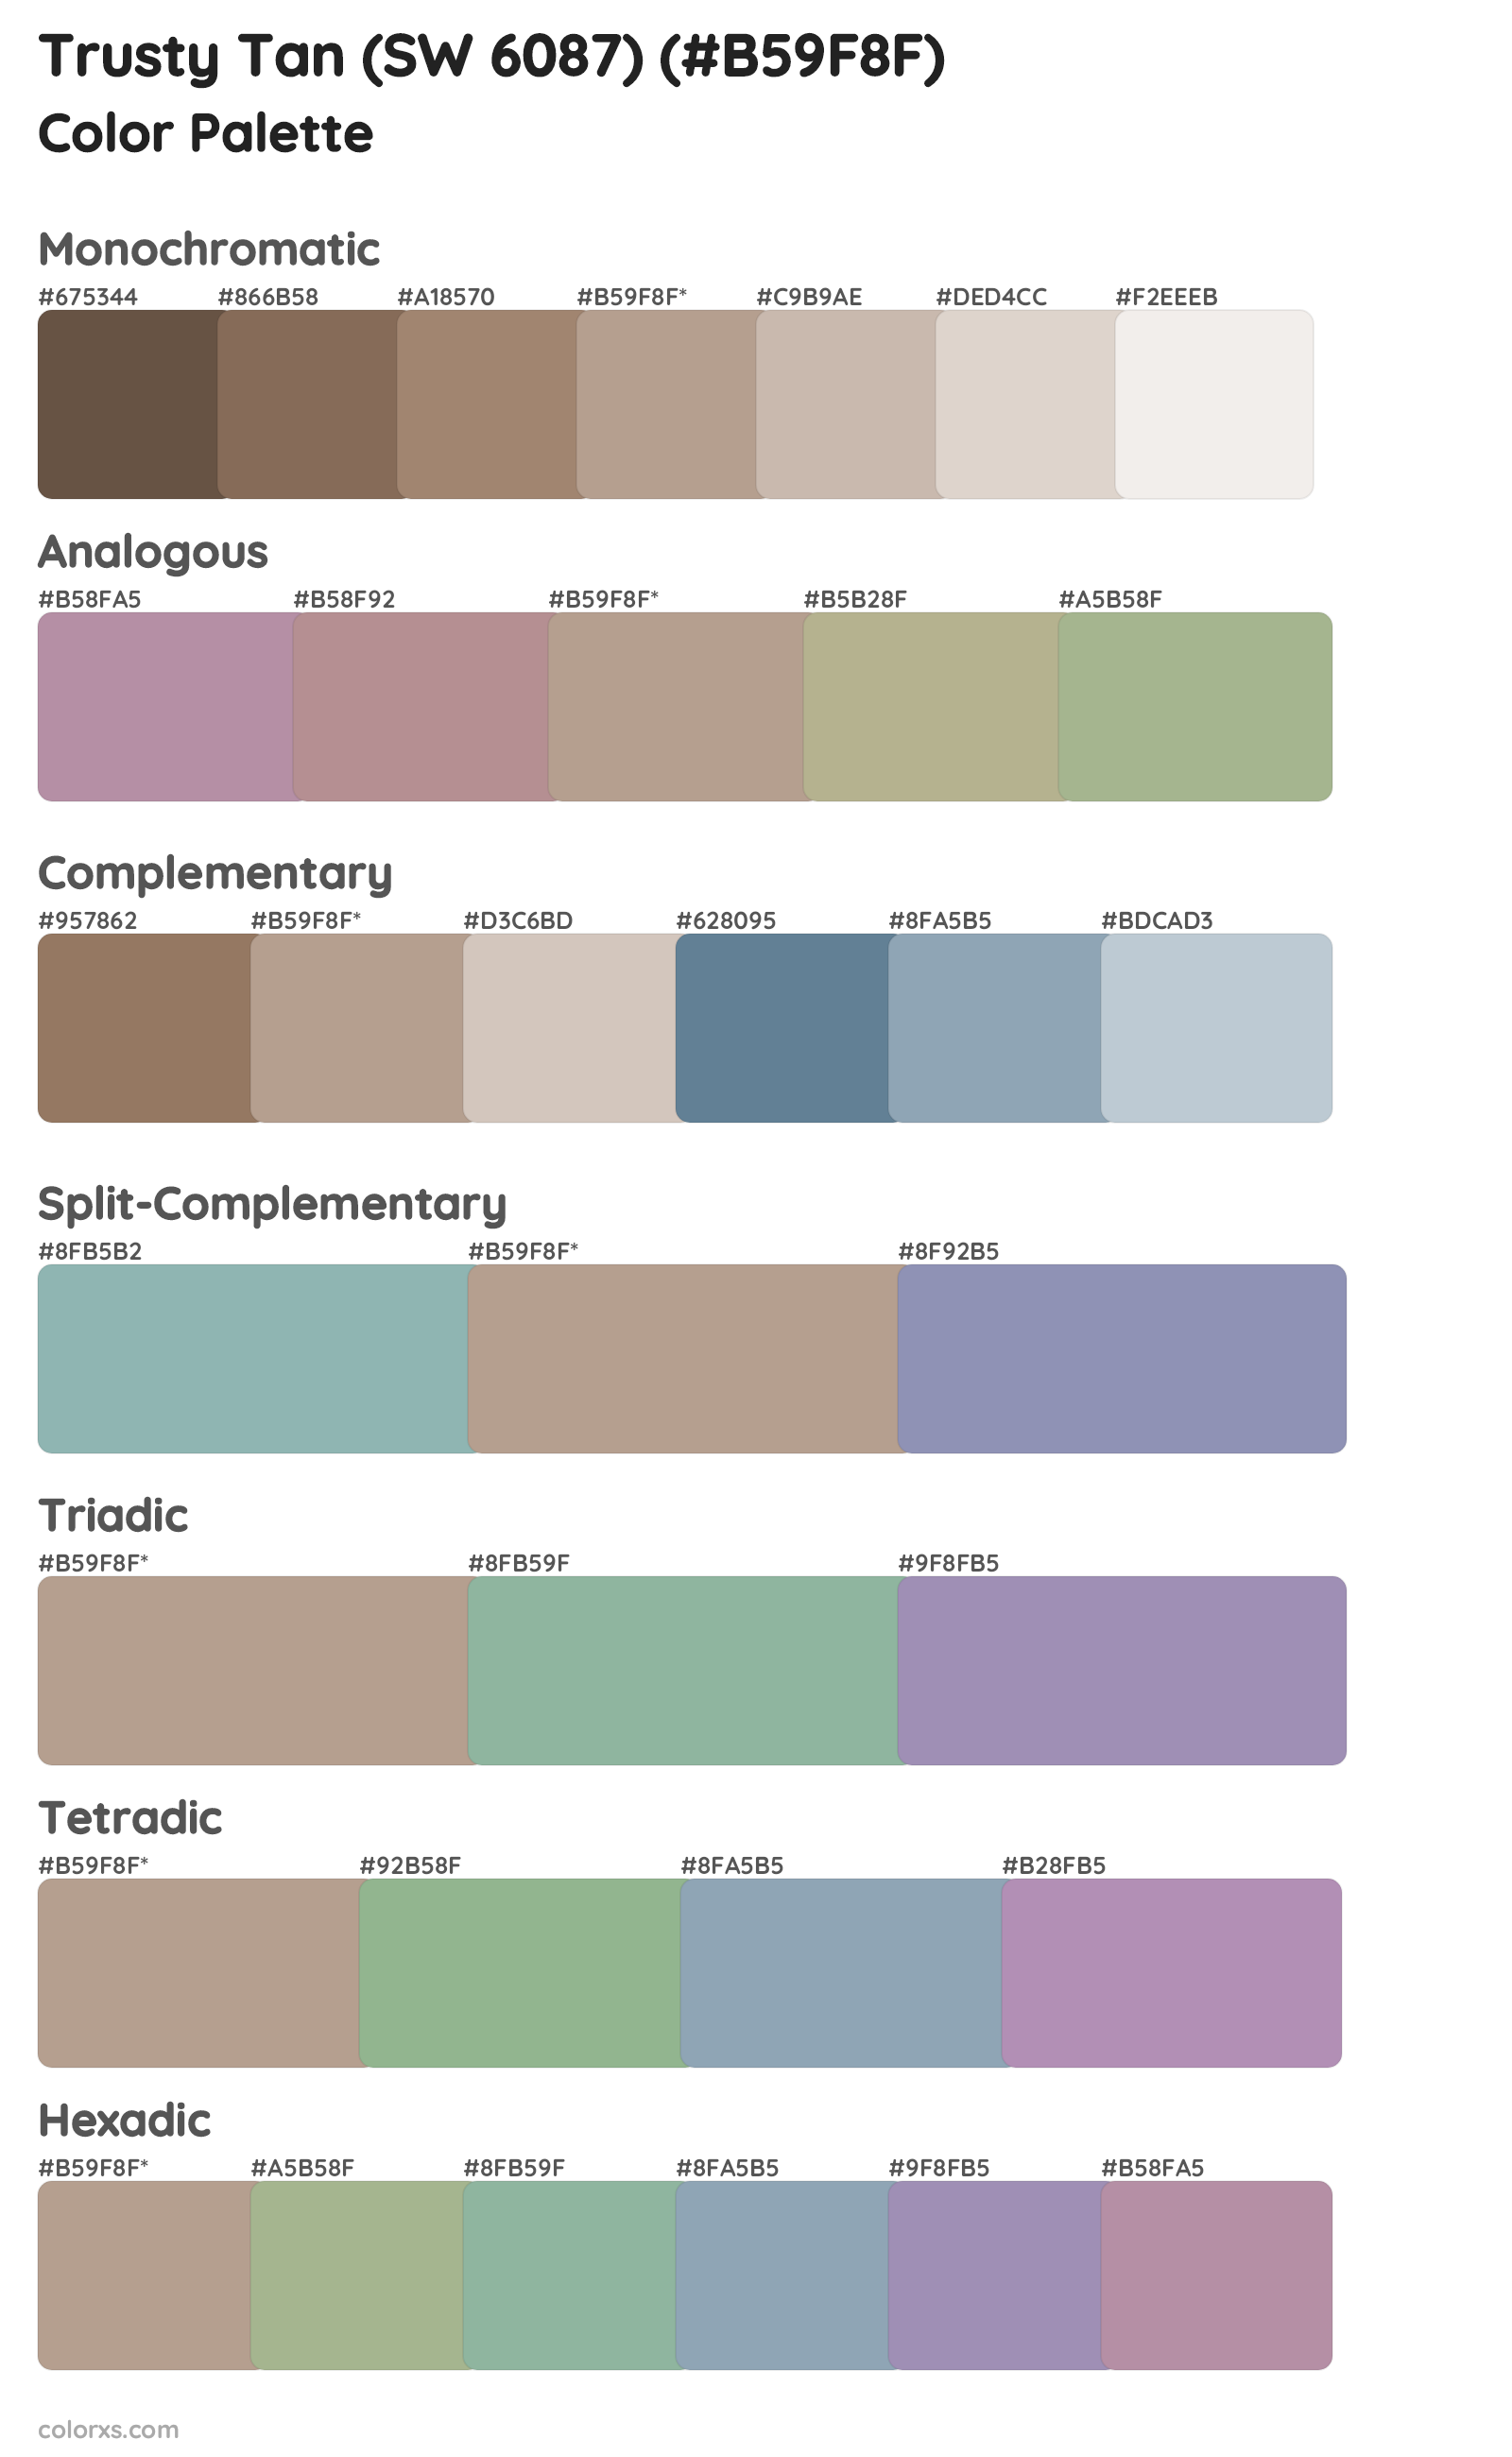 Trusty Tan (SW 6087) Color Scheme Palettes